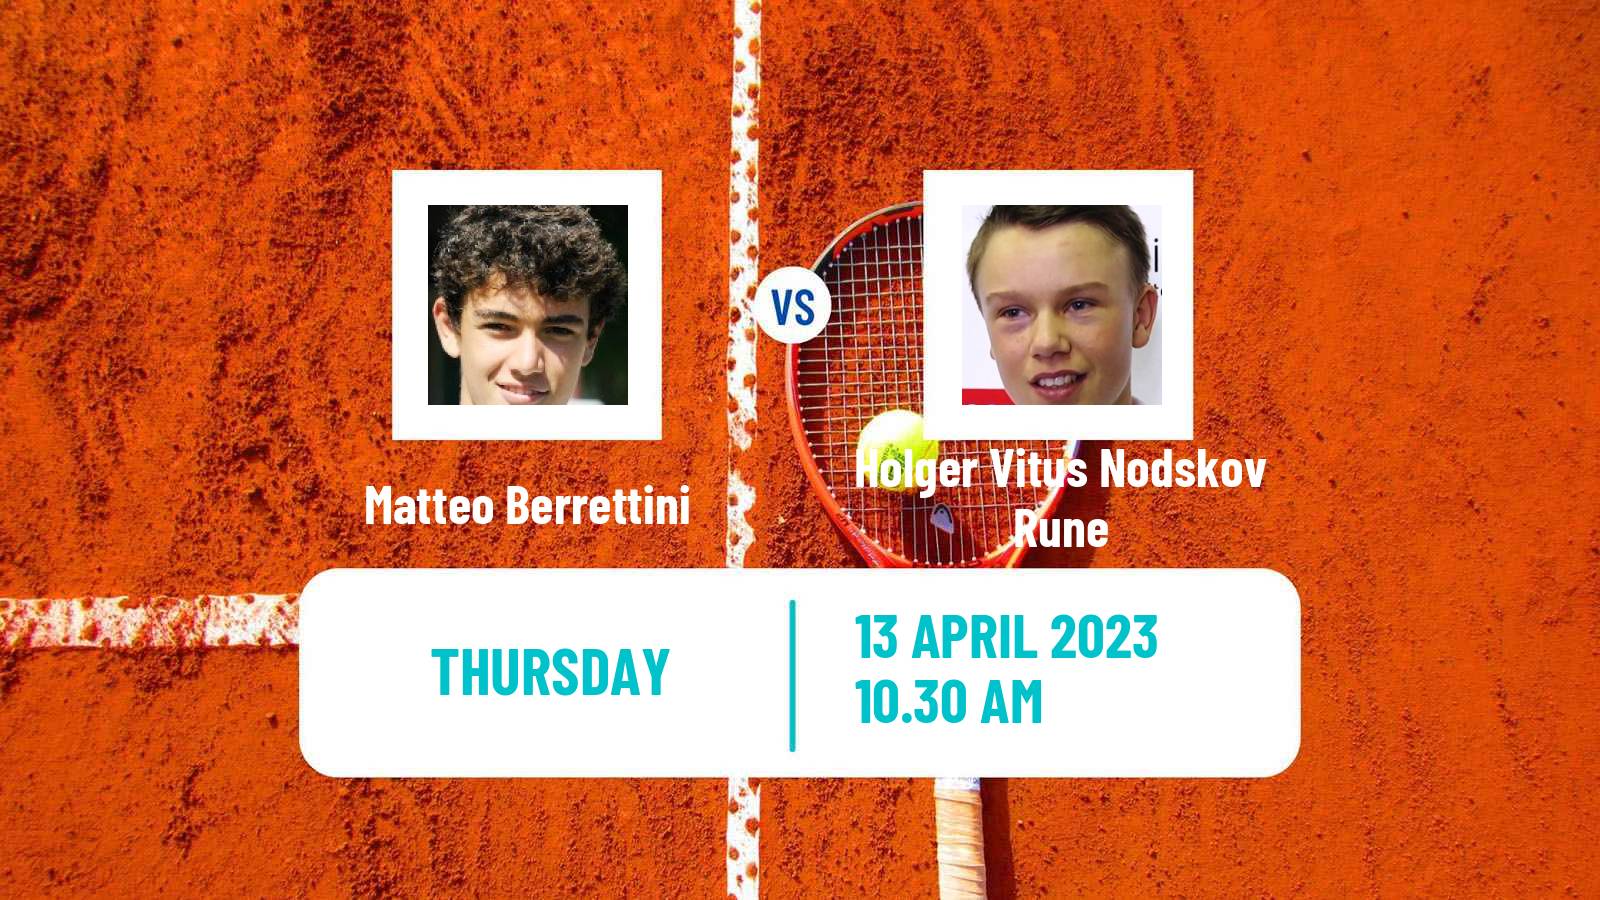 Tennis ATP Monte Carlo Matteo Berrettini - Holger Vitus Nodskov Rune